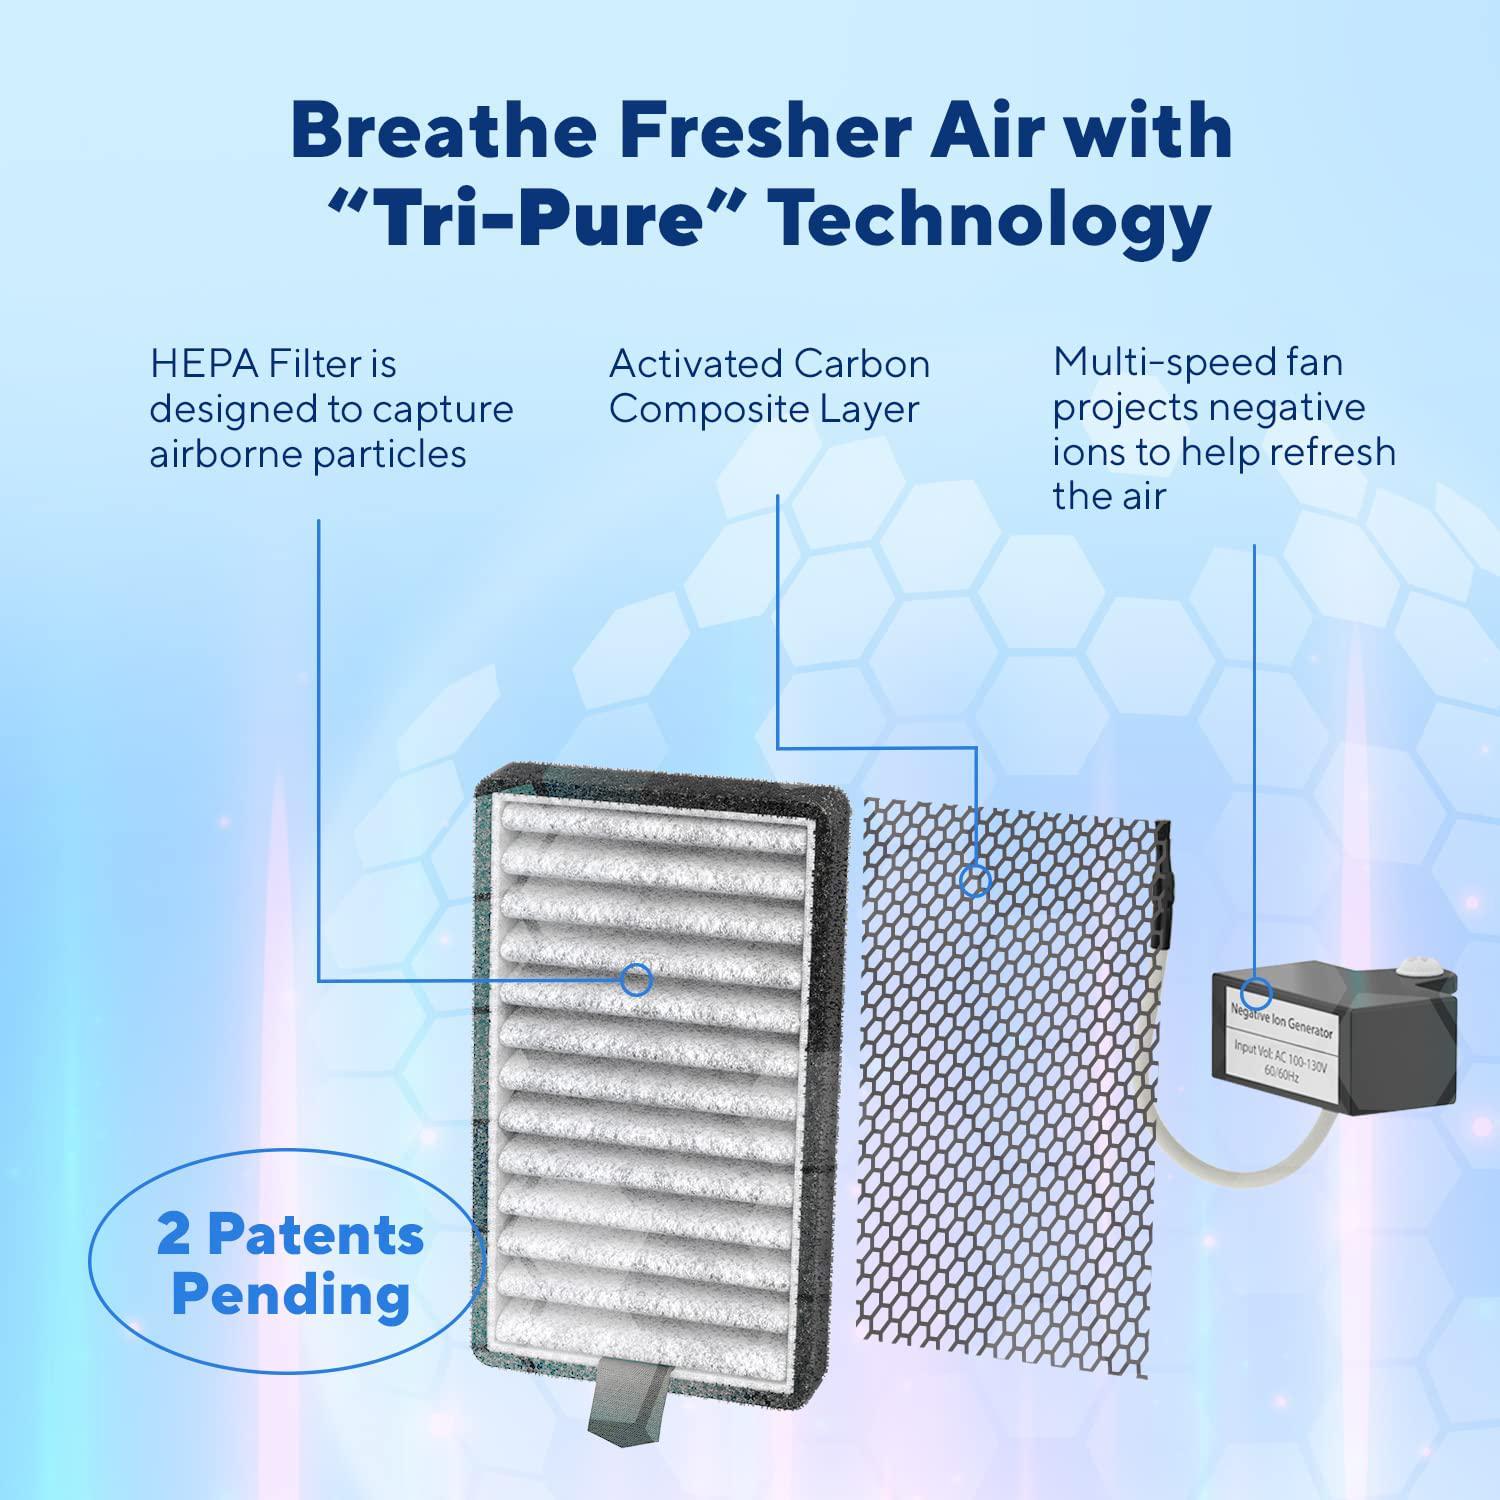 clarifion - dstx 2.0 portable air purifier (3 pack) - plug in air ionizer hepa air filter, mini personal air purifiers for, b